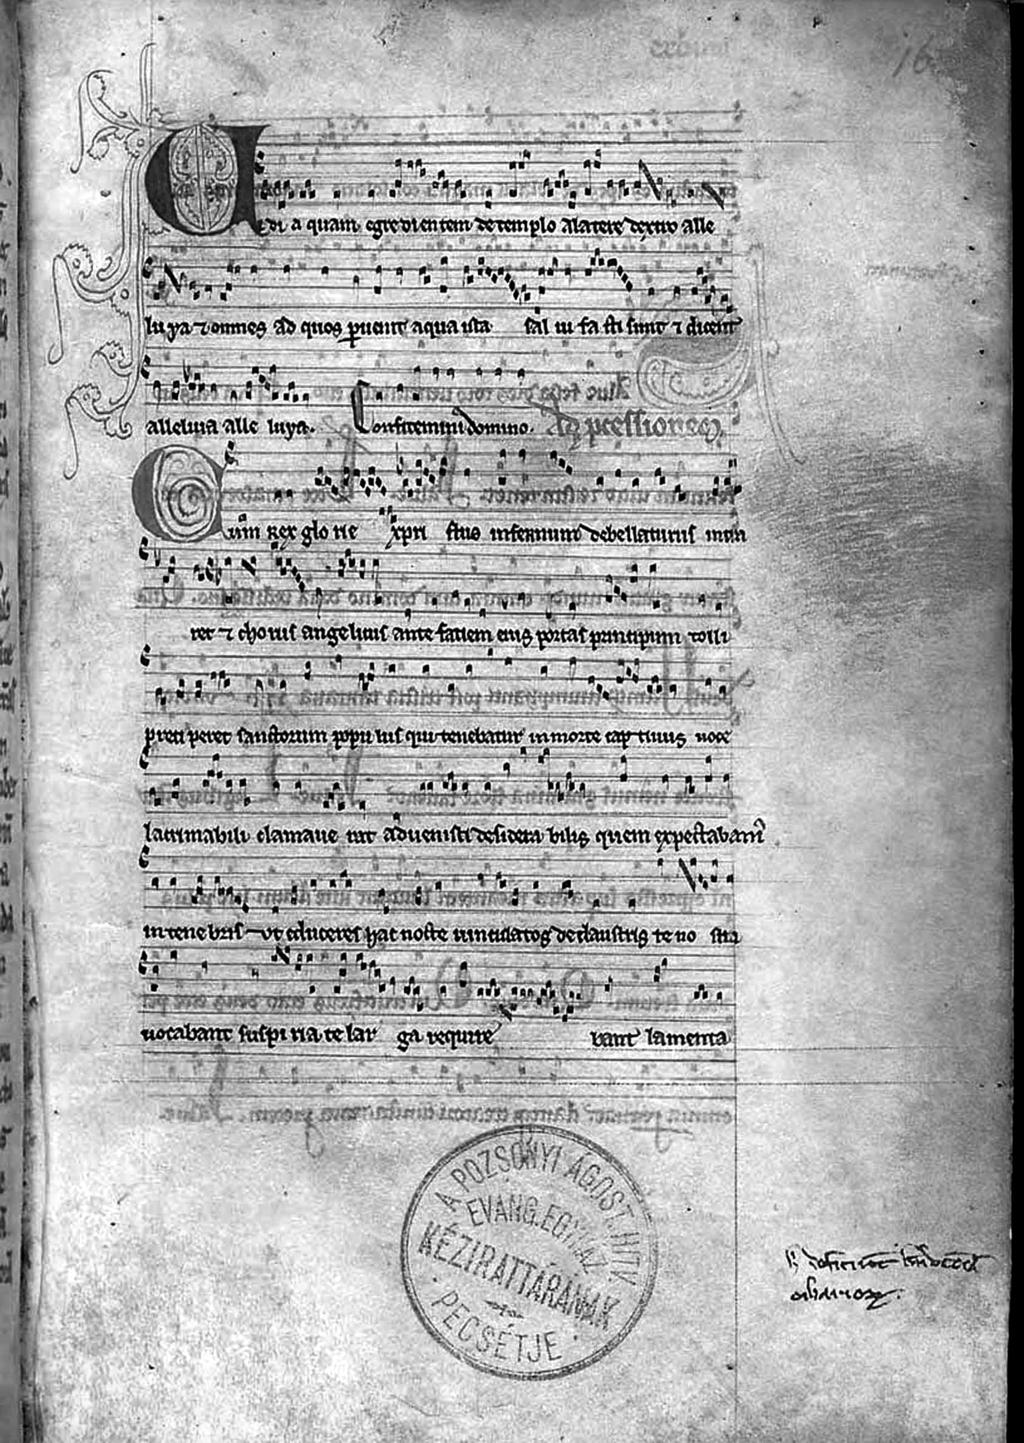 De musica disserenda V/1 2009 Abbildung 2 Das Notierte Missale aus der Zentralbibliothek der